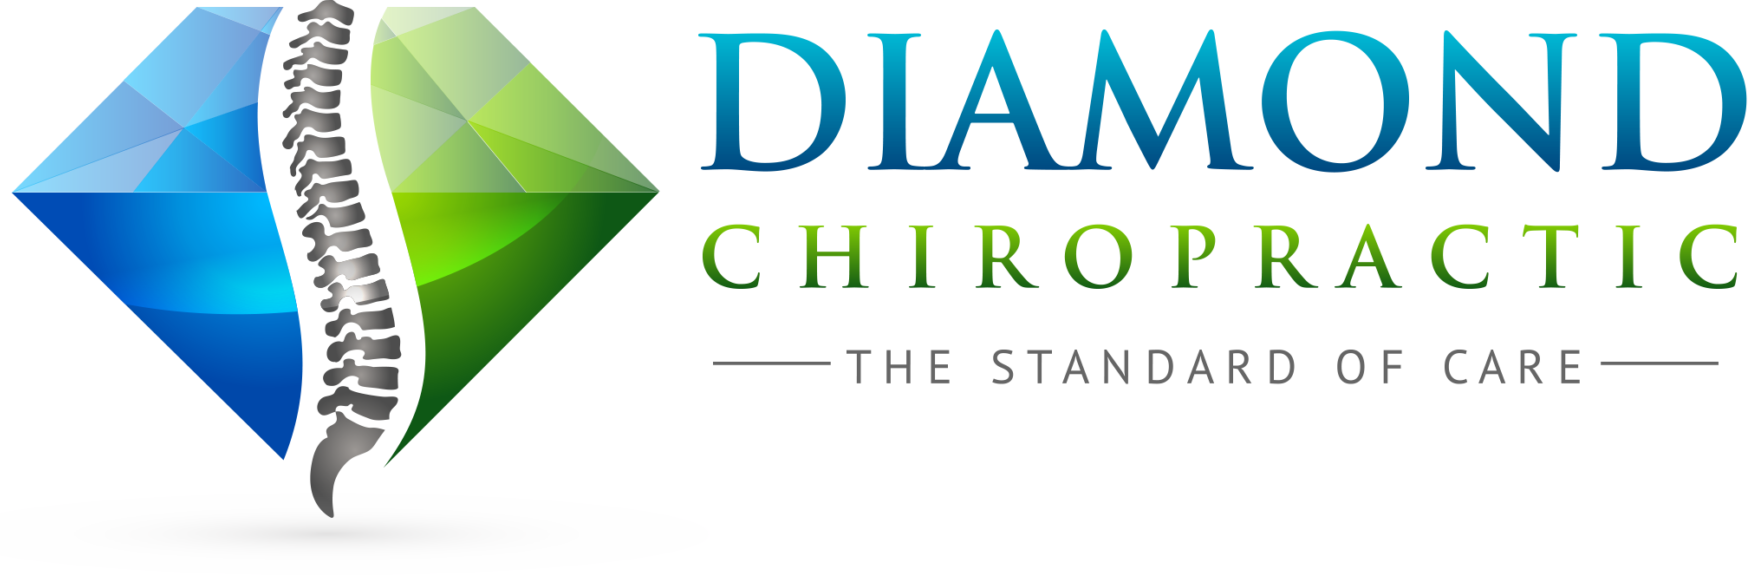 Diamond Chiropractic logo